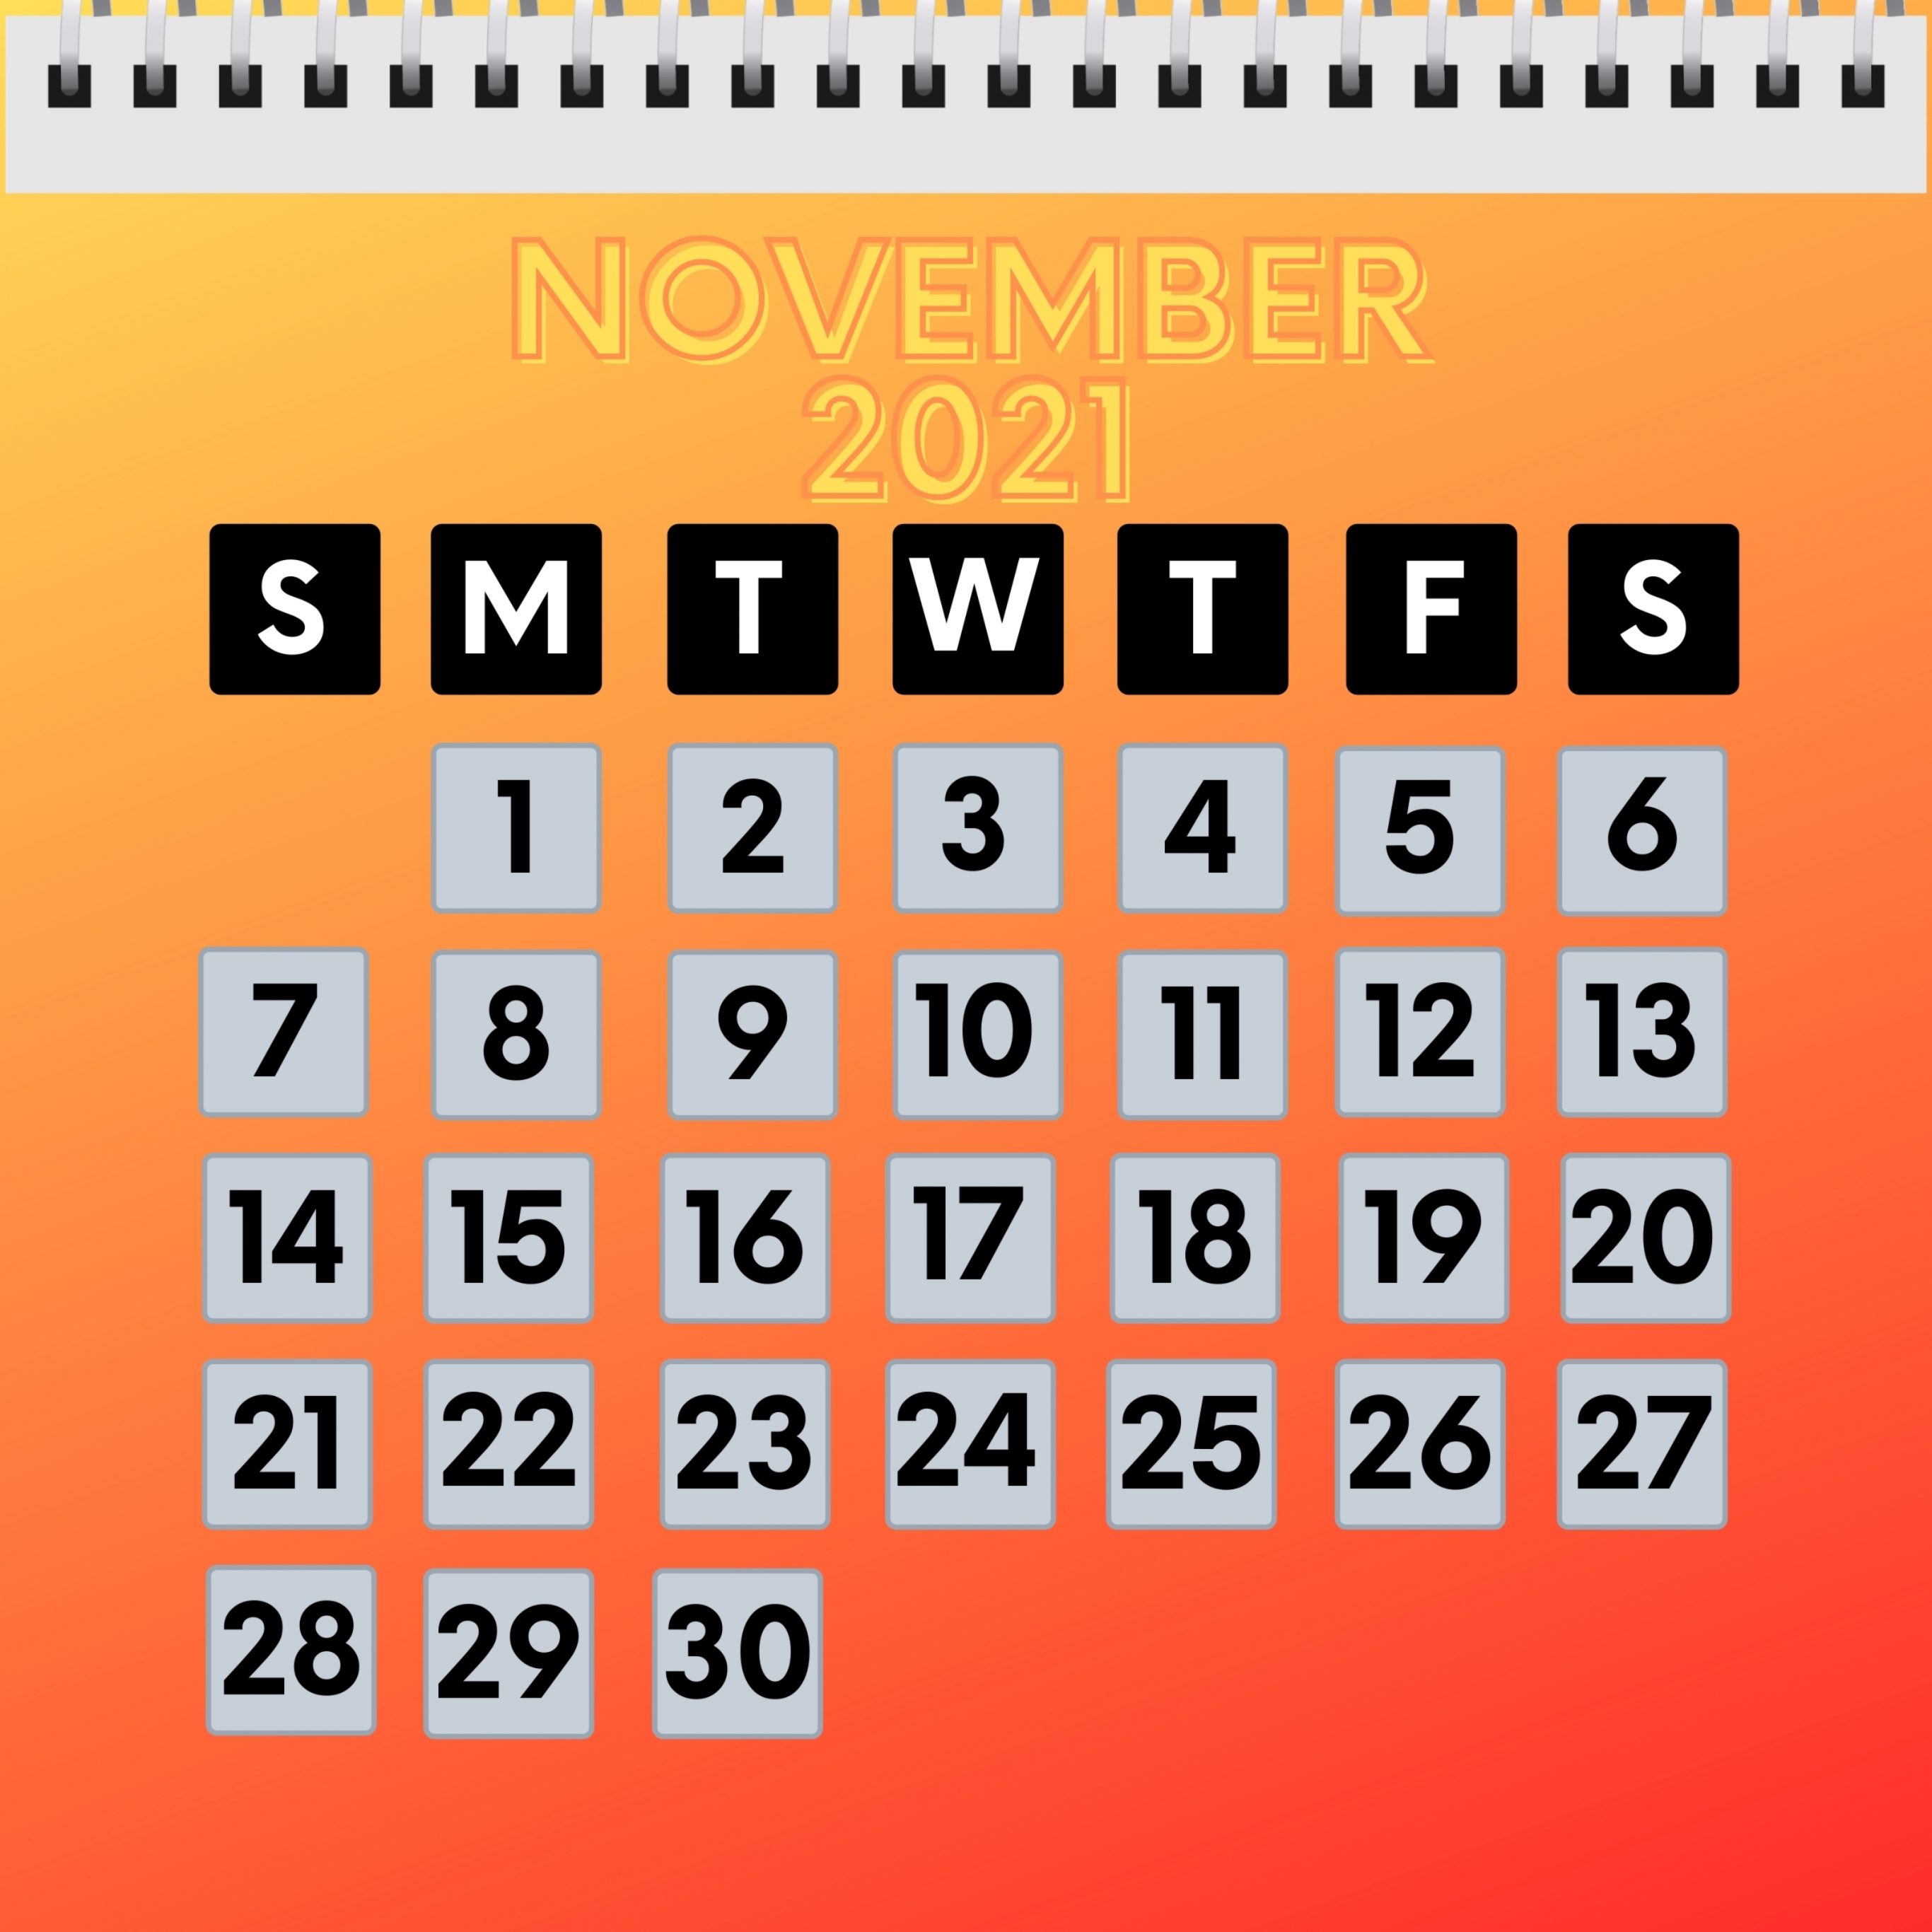 2732x2732 wallpapers 4k iPad Pro November 2021 Calendar iPad Wallpaper 2732x2732 pixels resolution